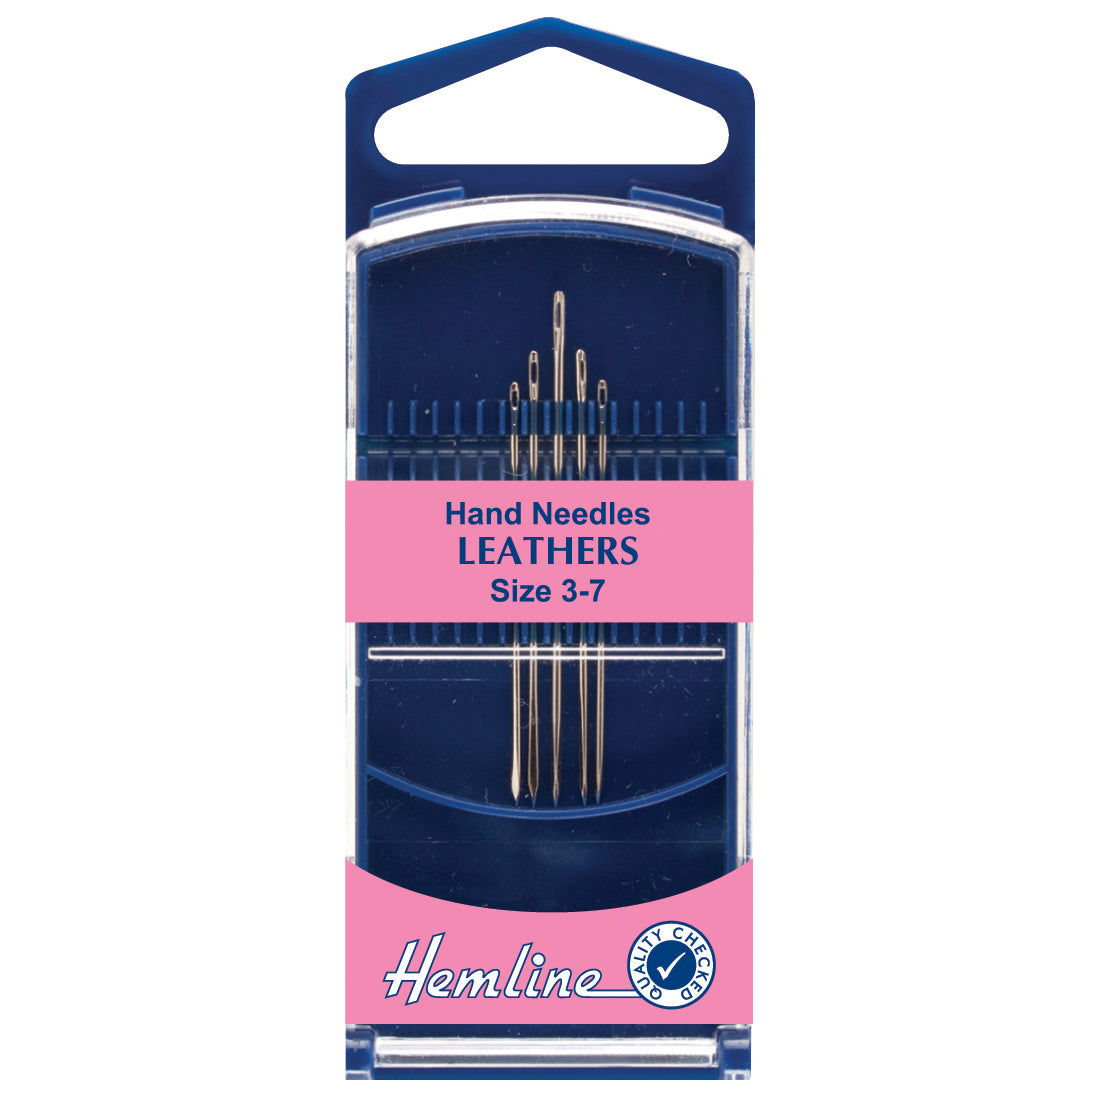 Hemline Premium Hand Needles Leather sizes 3 to 7 